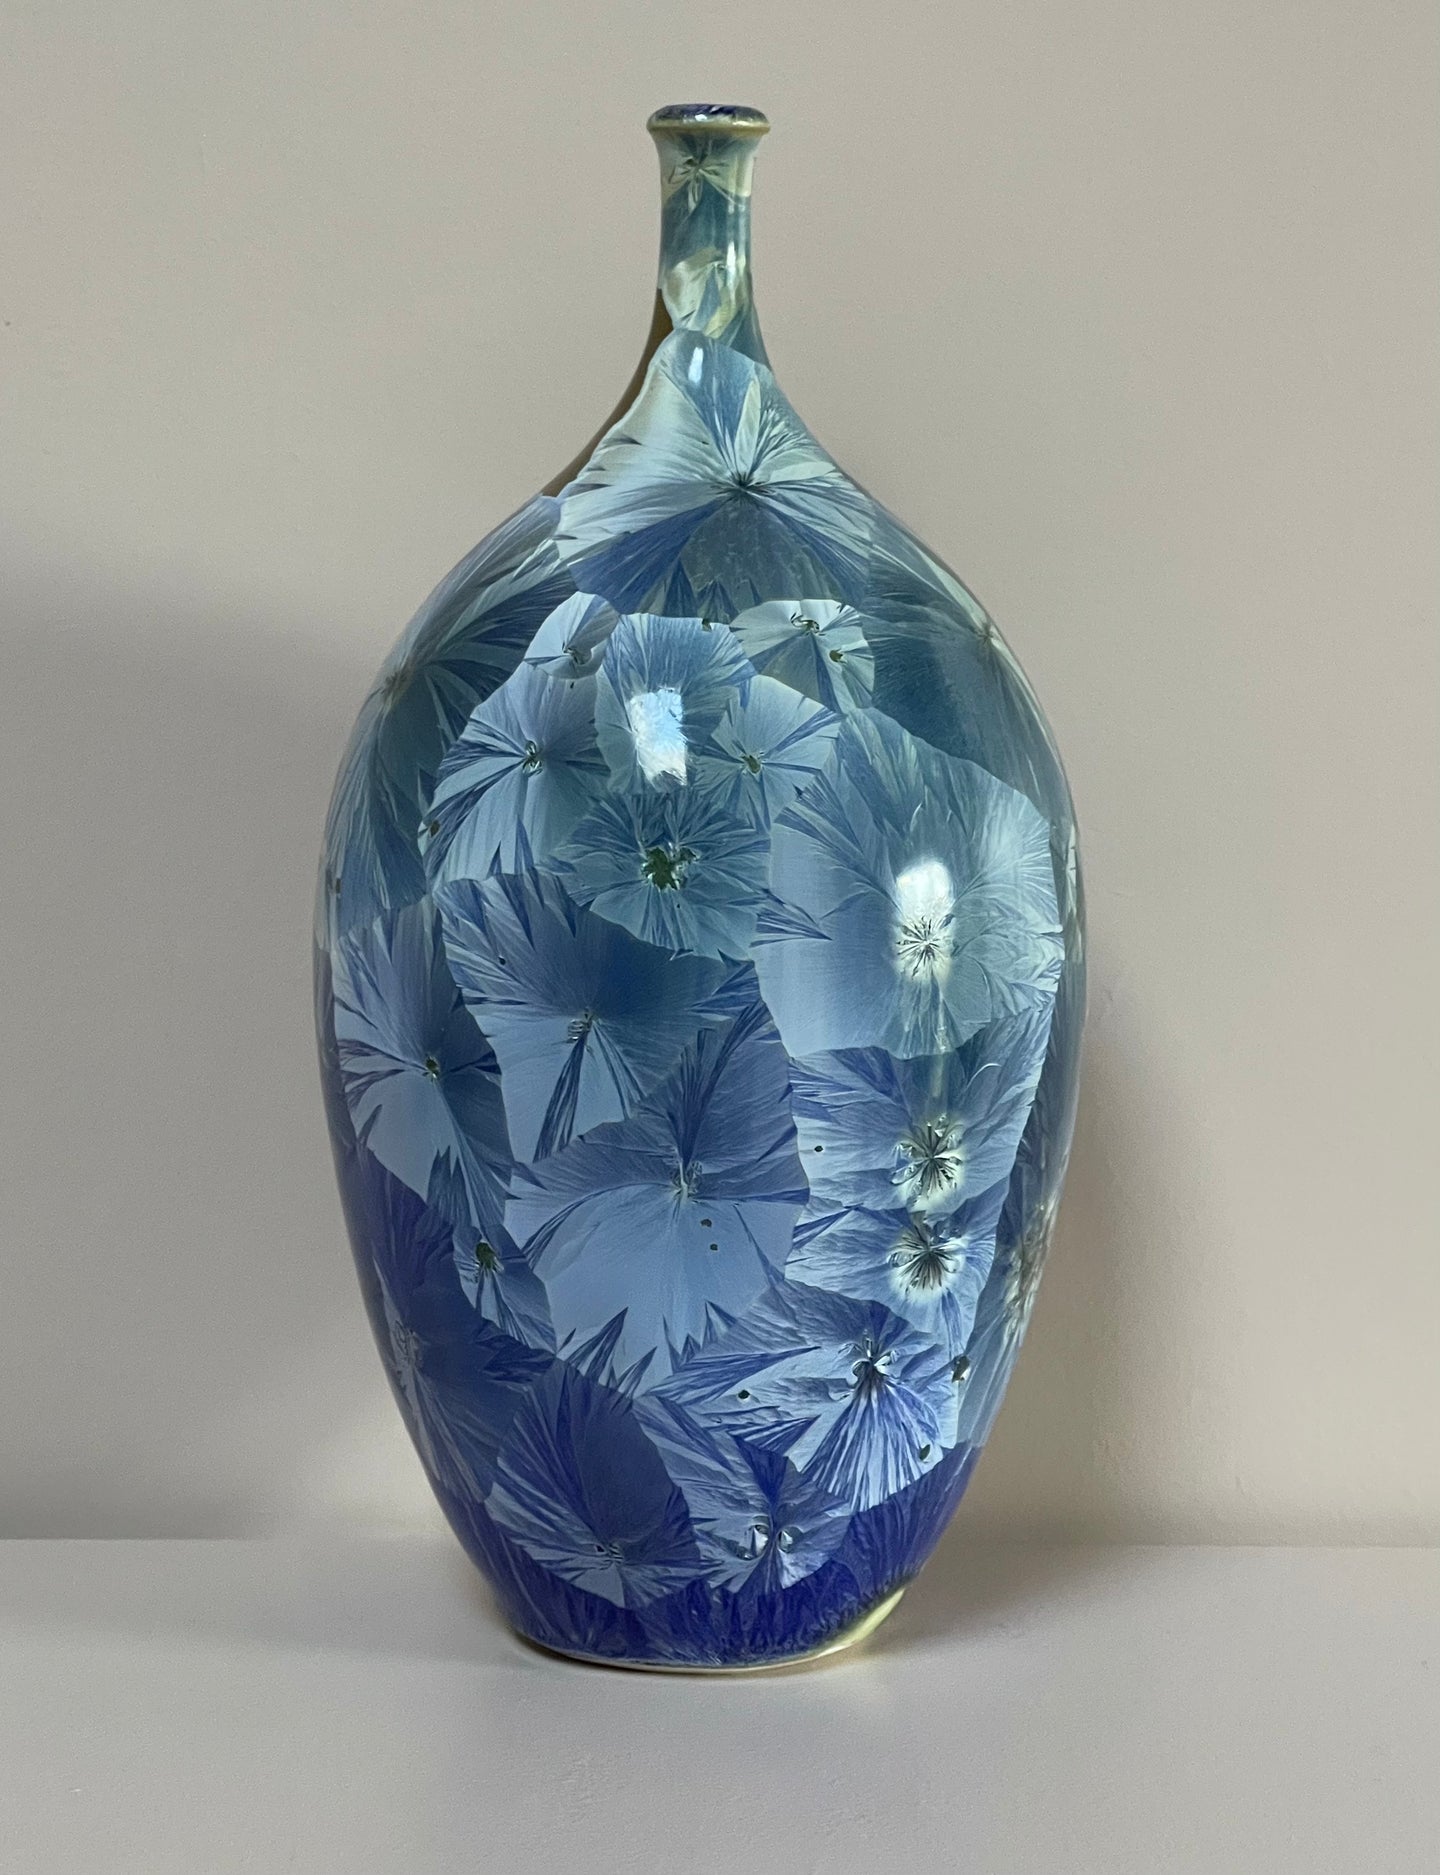 Medium Blue Crystalline Vase